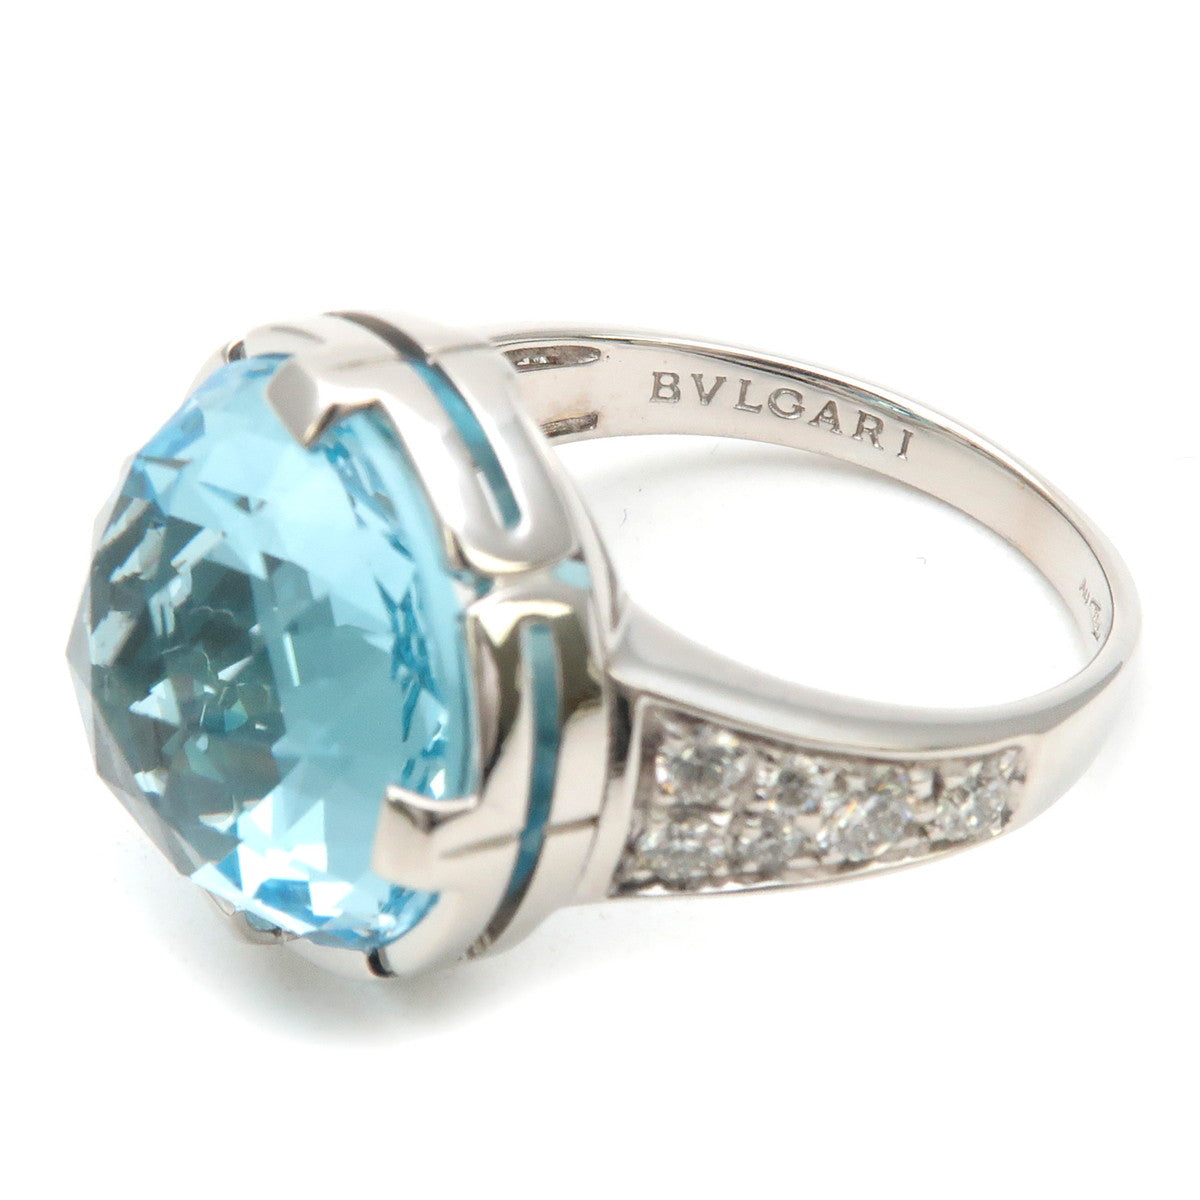 BVLGARI Parentesi Ring Blue Topaz Diamond White Gold US6-6.5 EU52